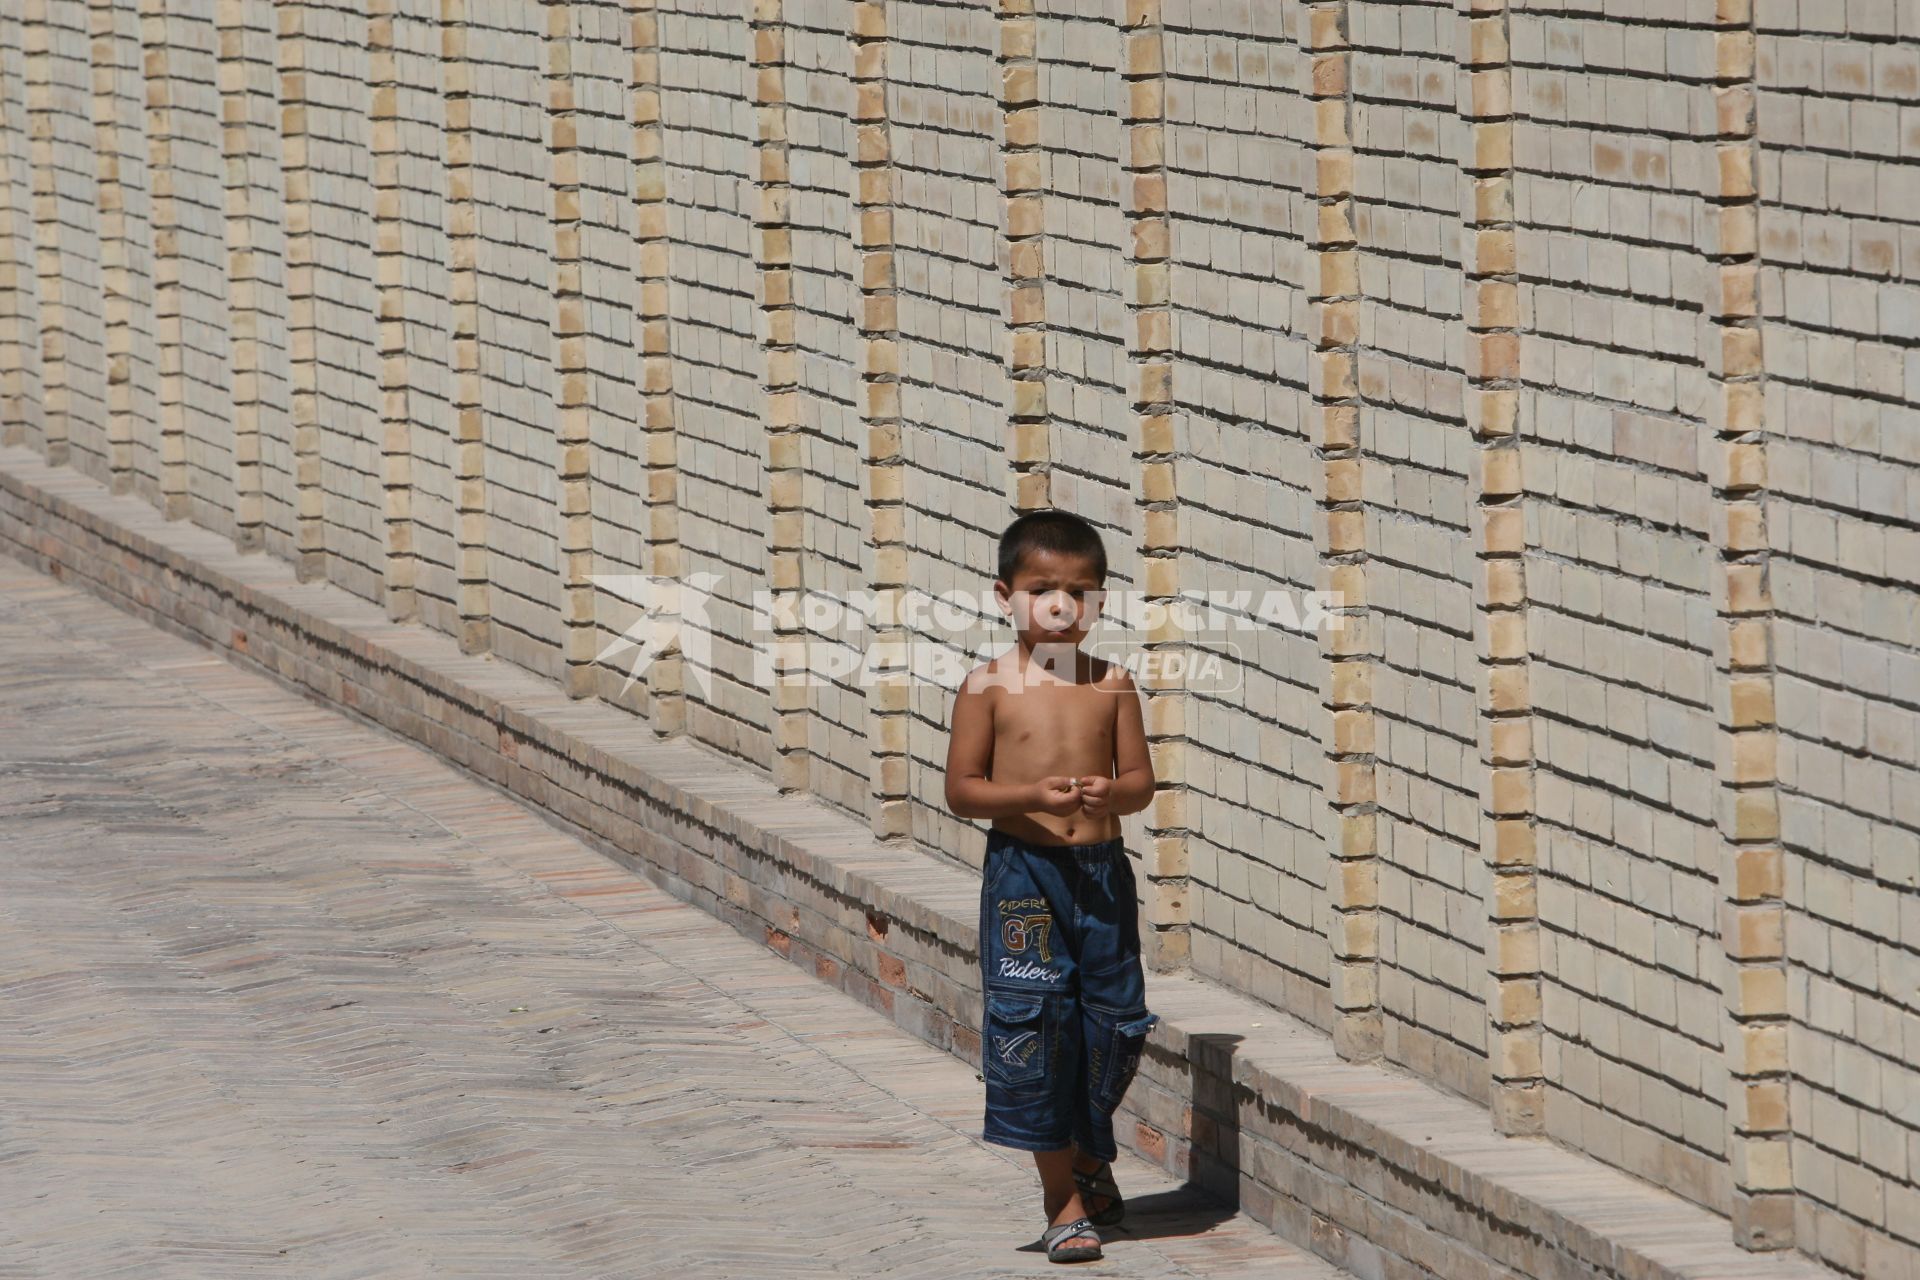 Ташкент. На снимке: мальчик идет по улице.